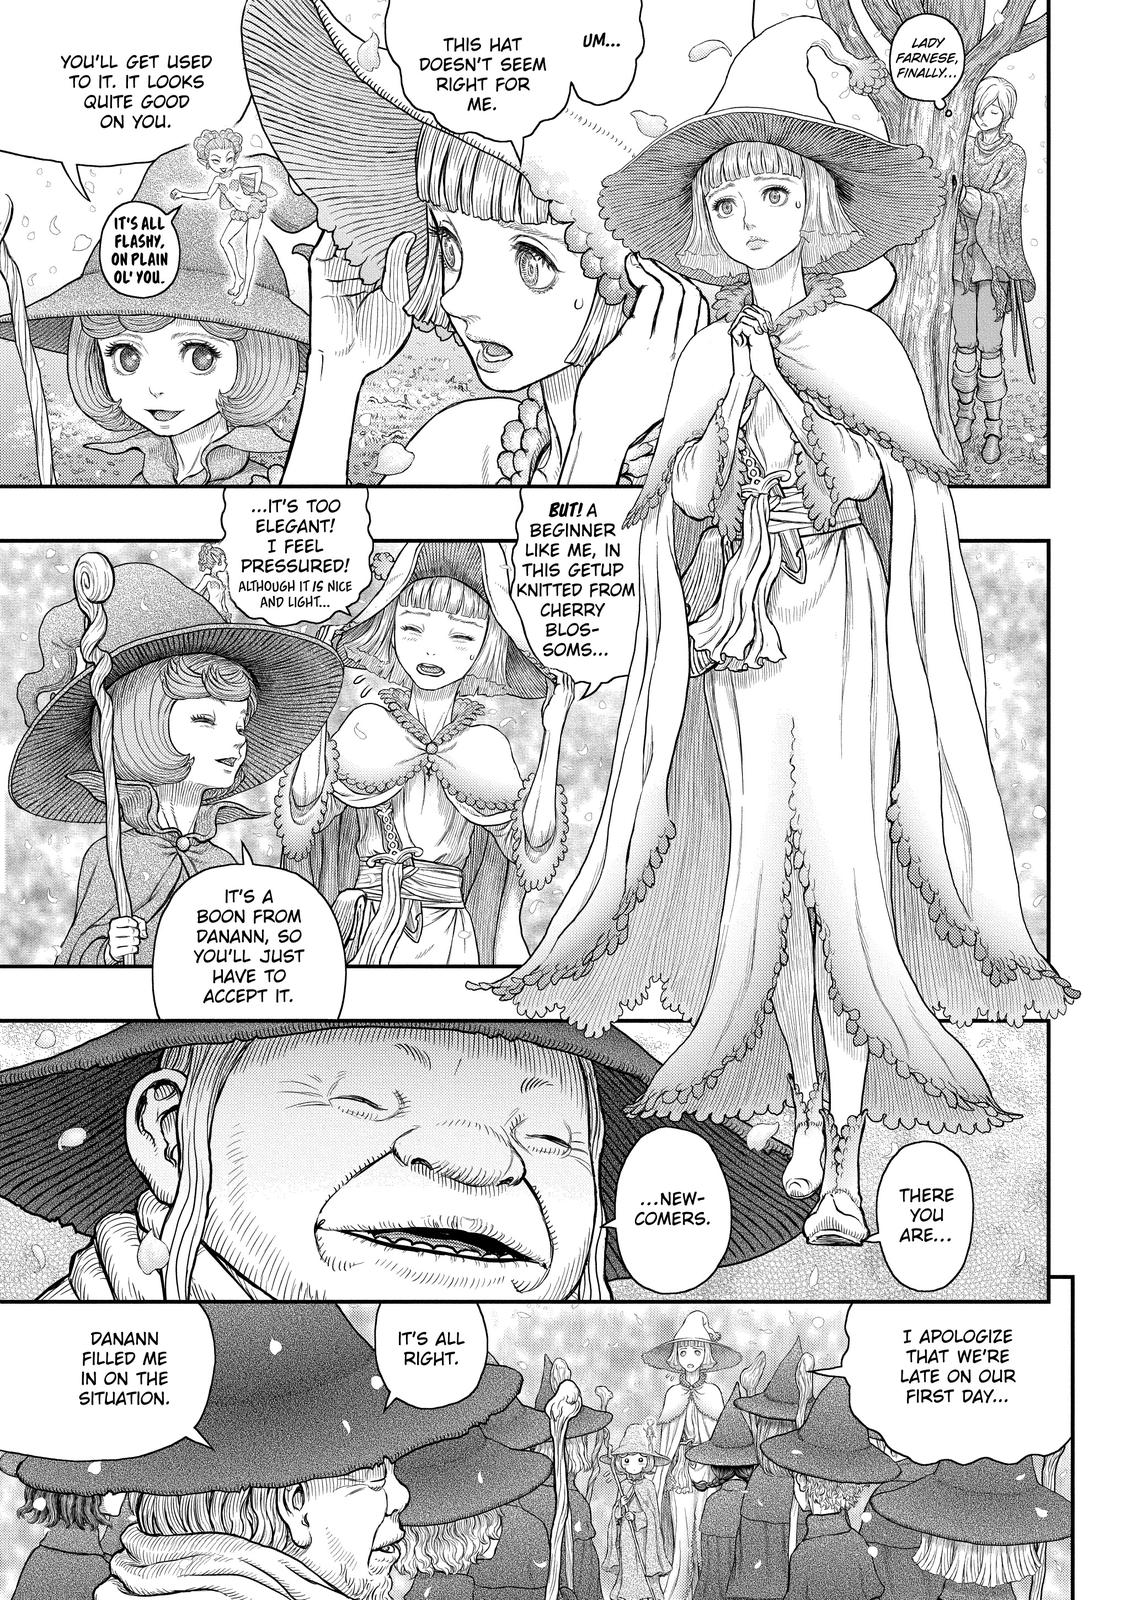 Berserk Manga Chapter 360 image 05